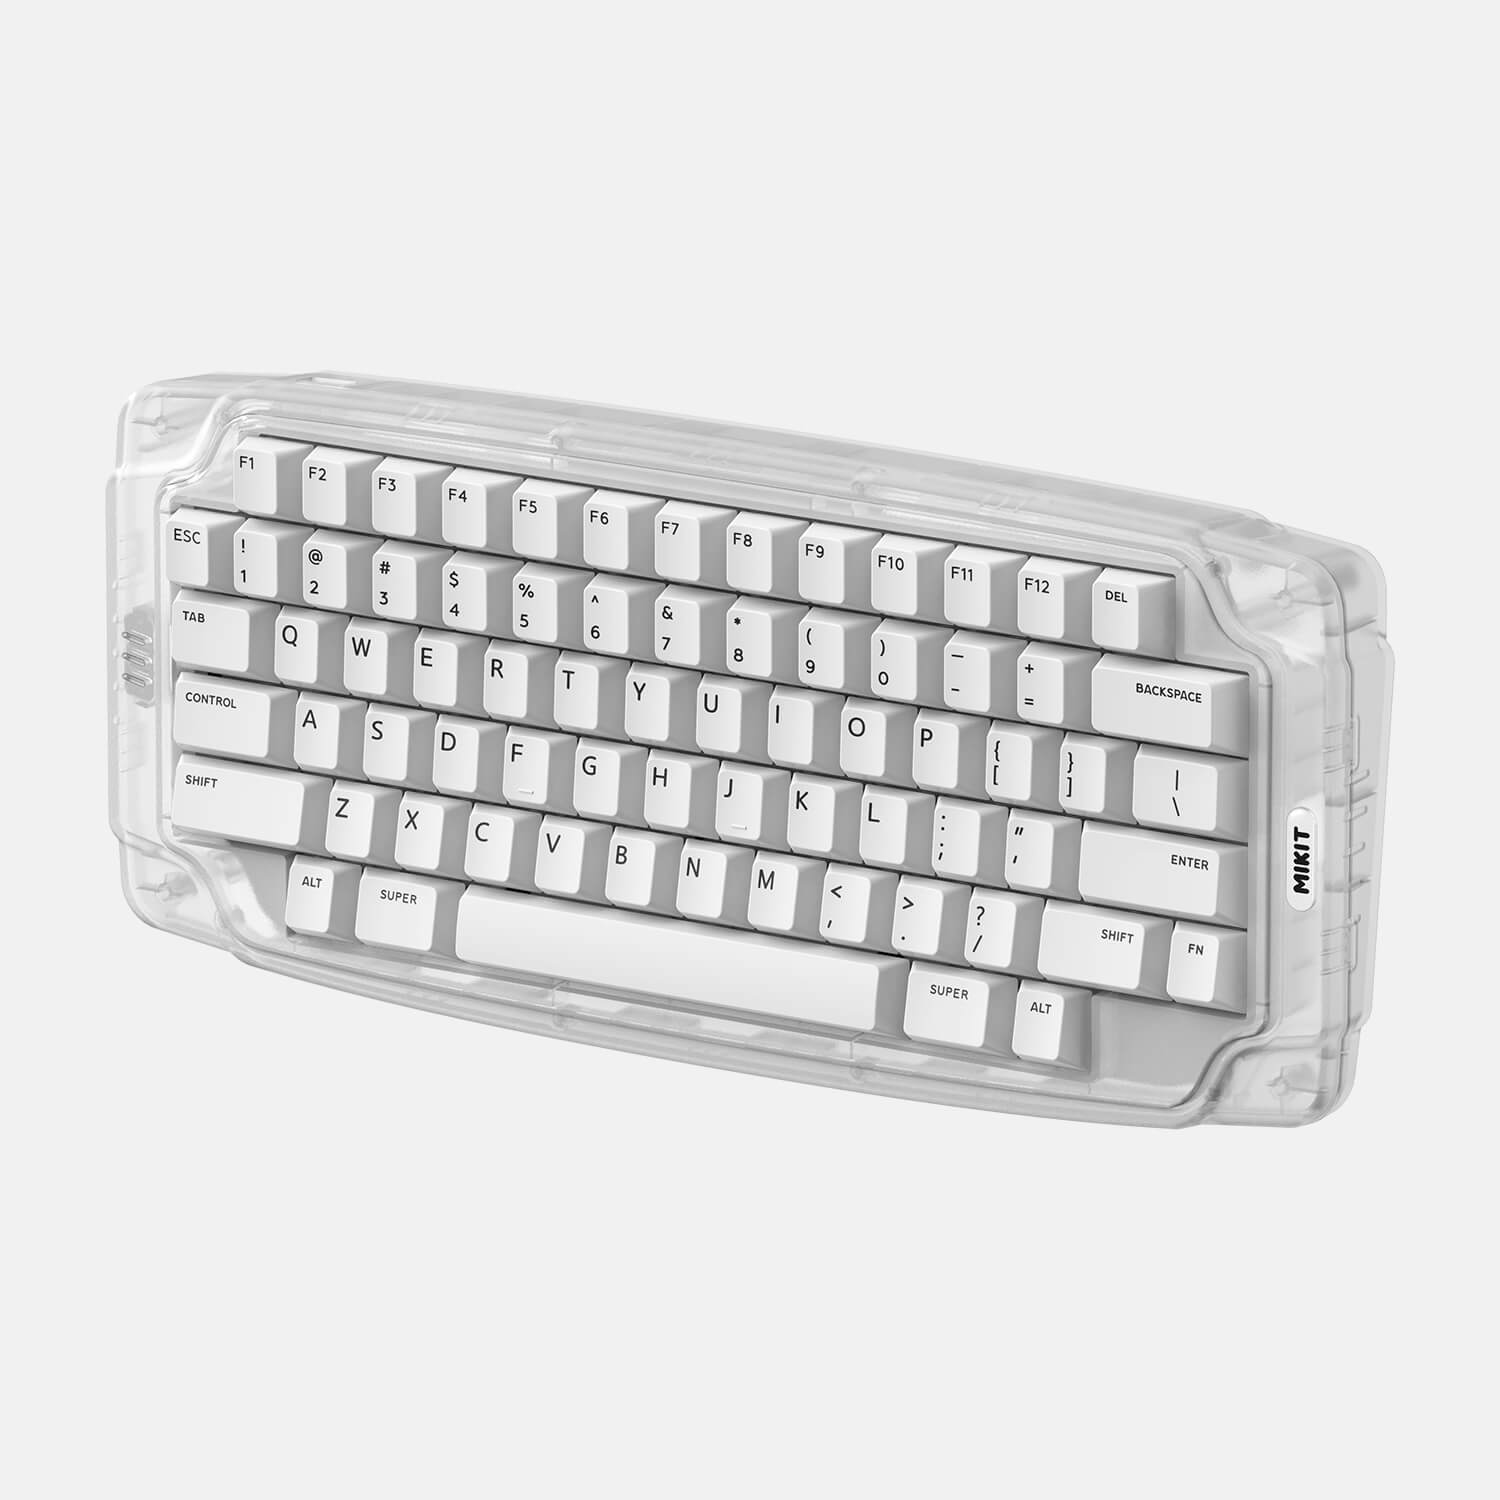 MIKIT M72 Keyboard wireless gaming keyboard